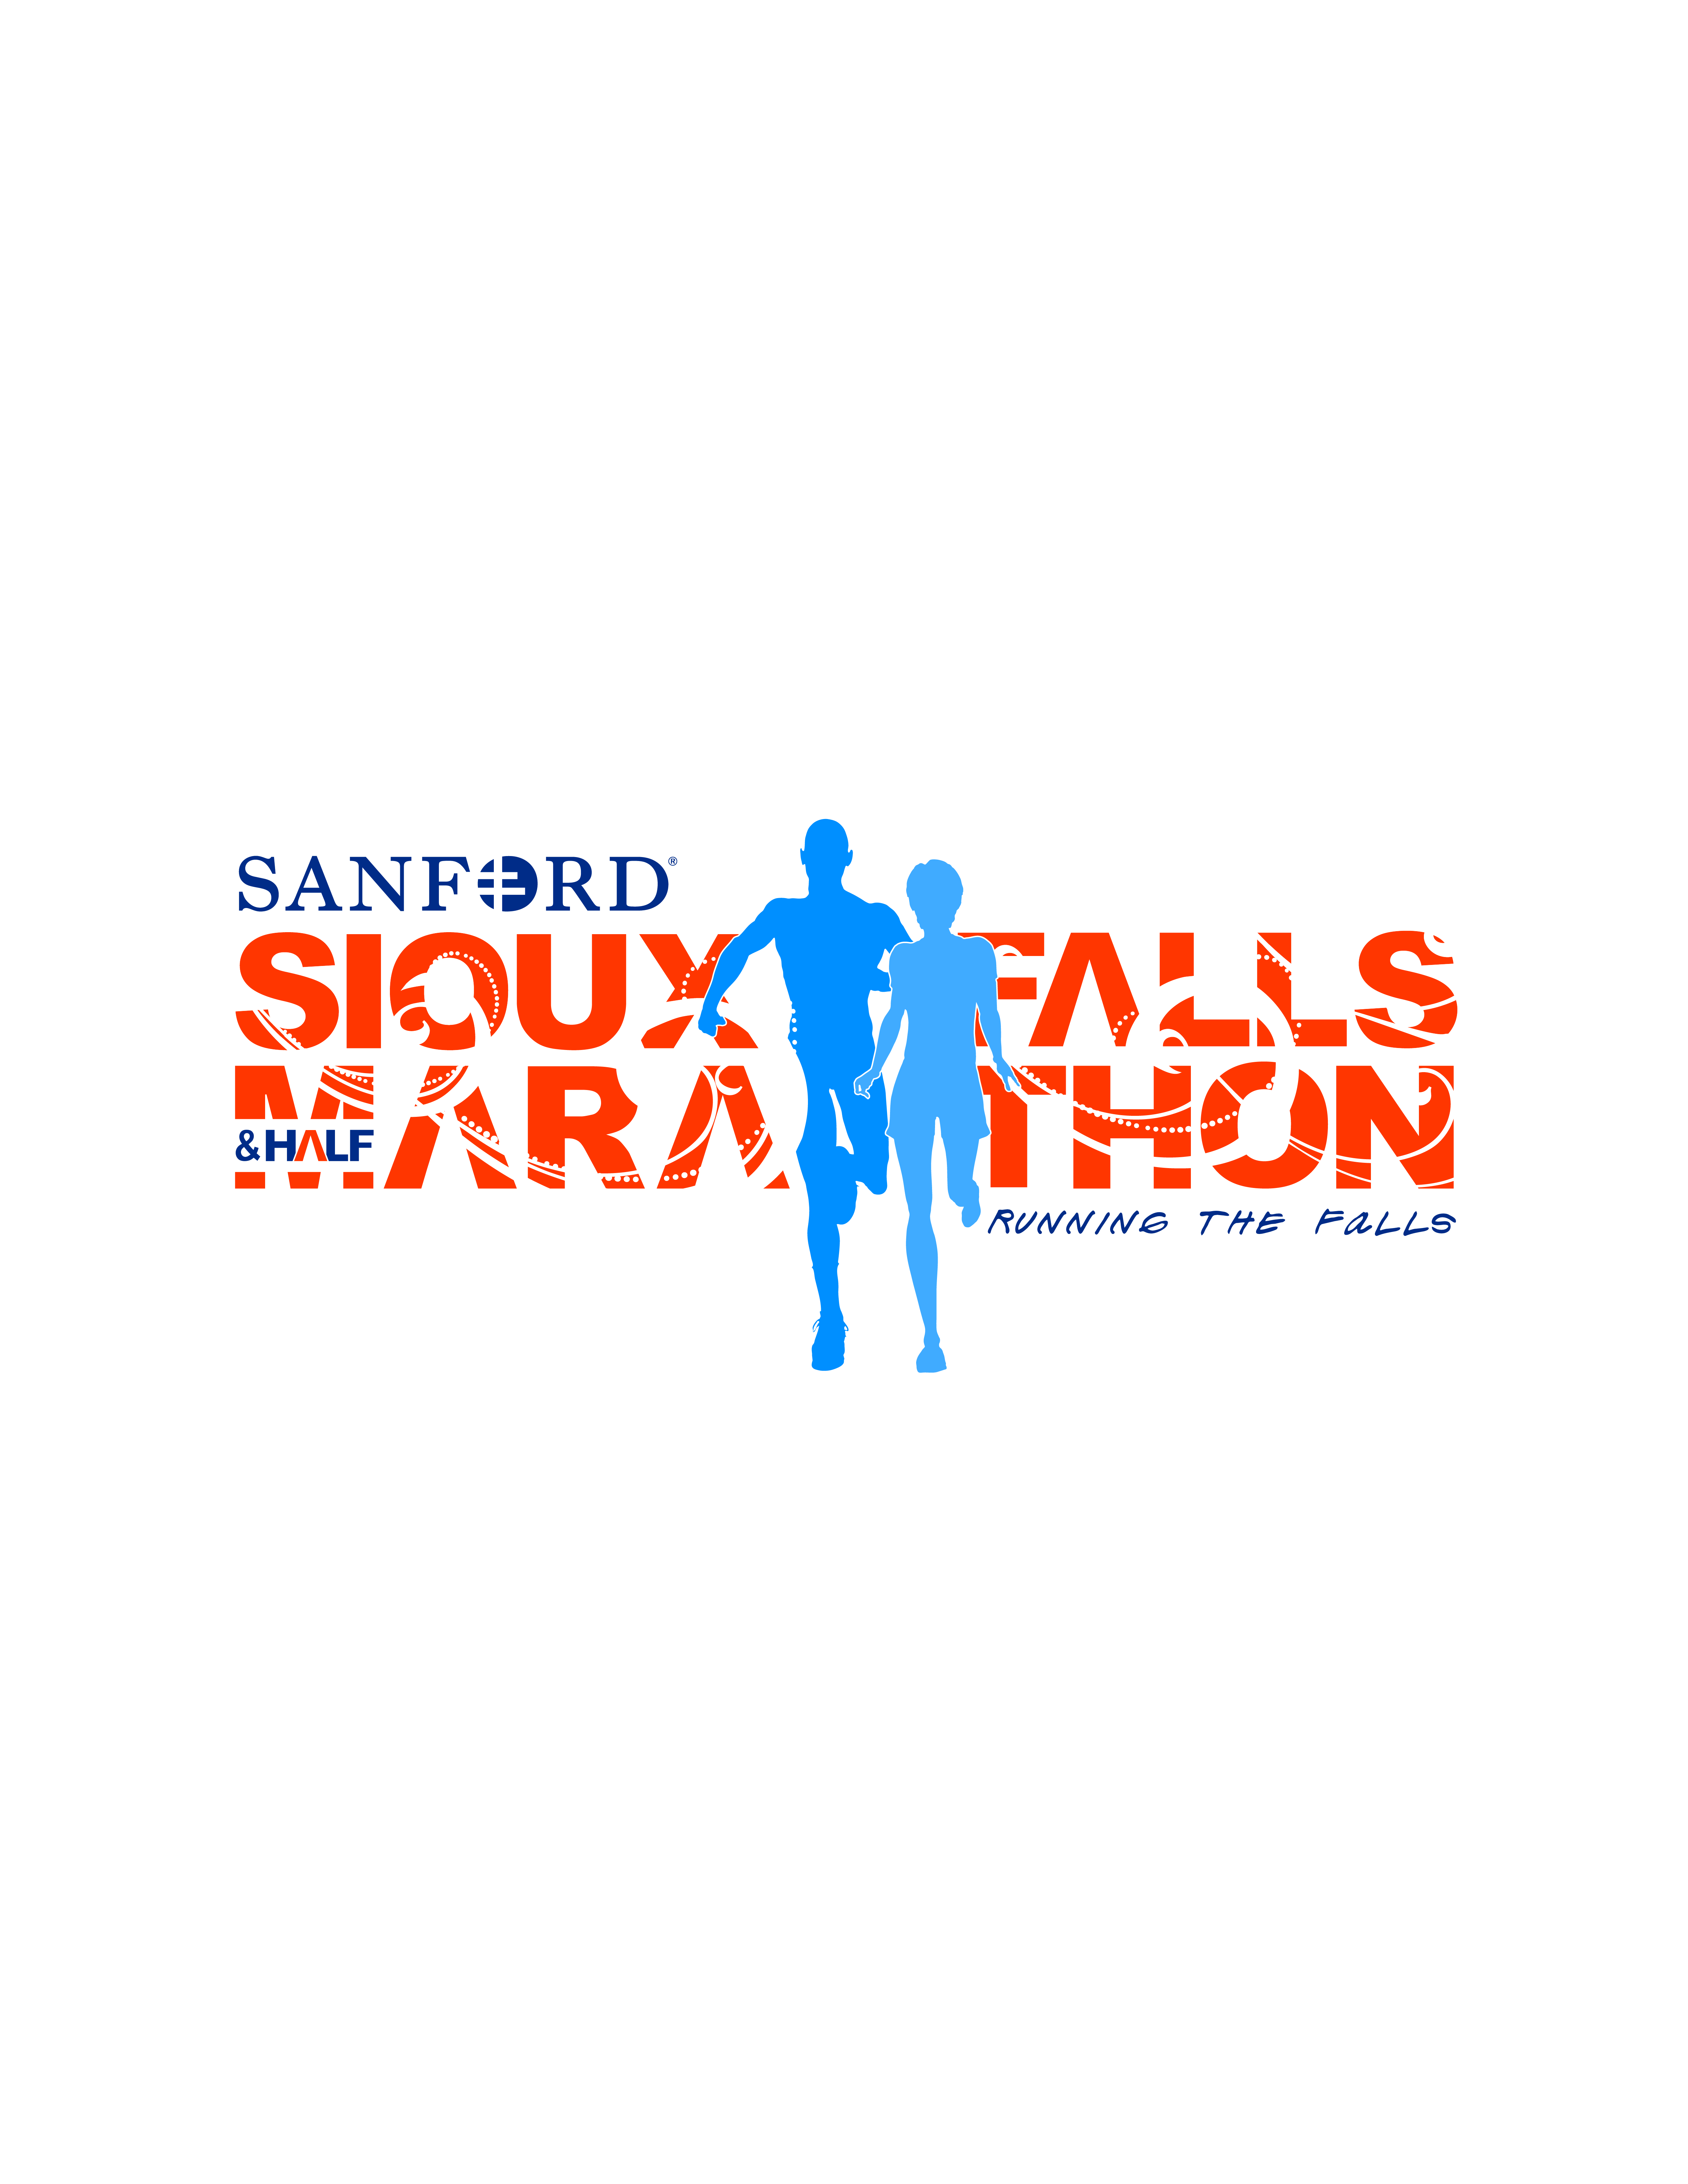 Sanford Health Sioux Falls Marathon & Half Marathon